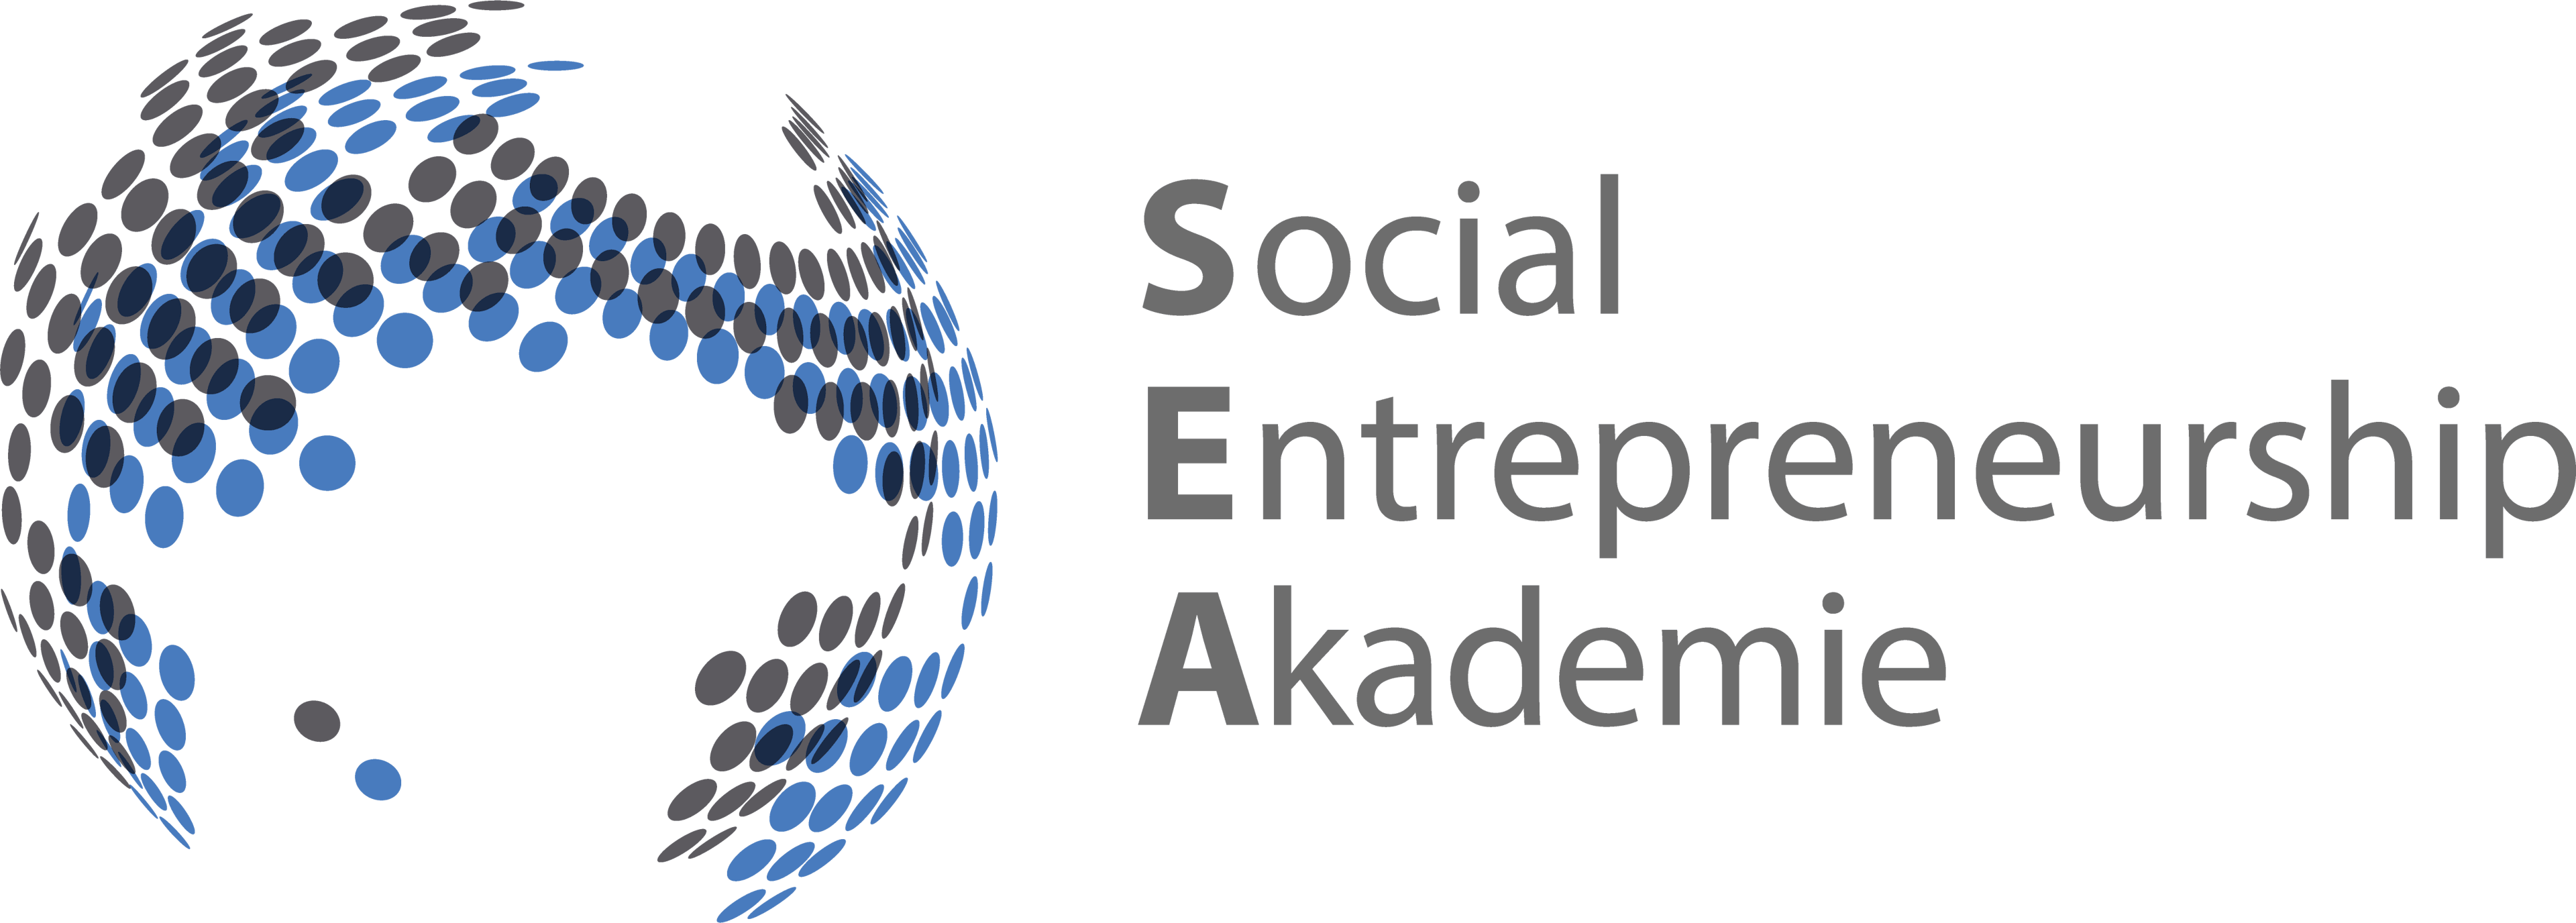 Social Entrepreneurship Akademie logo